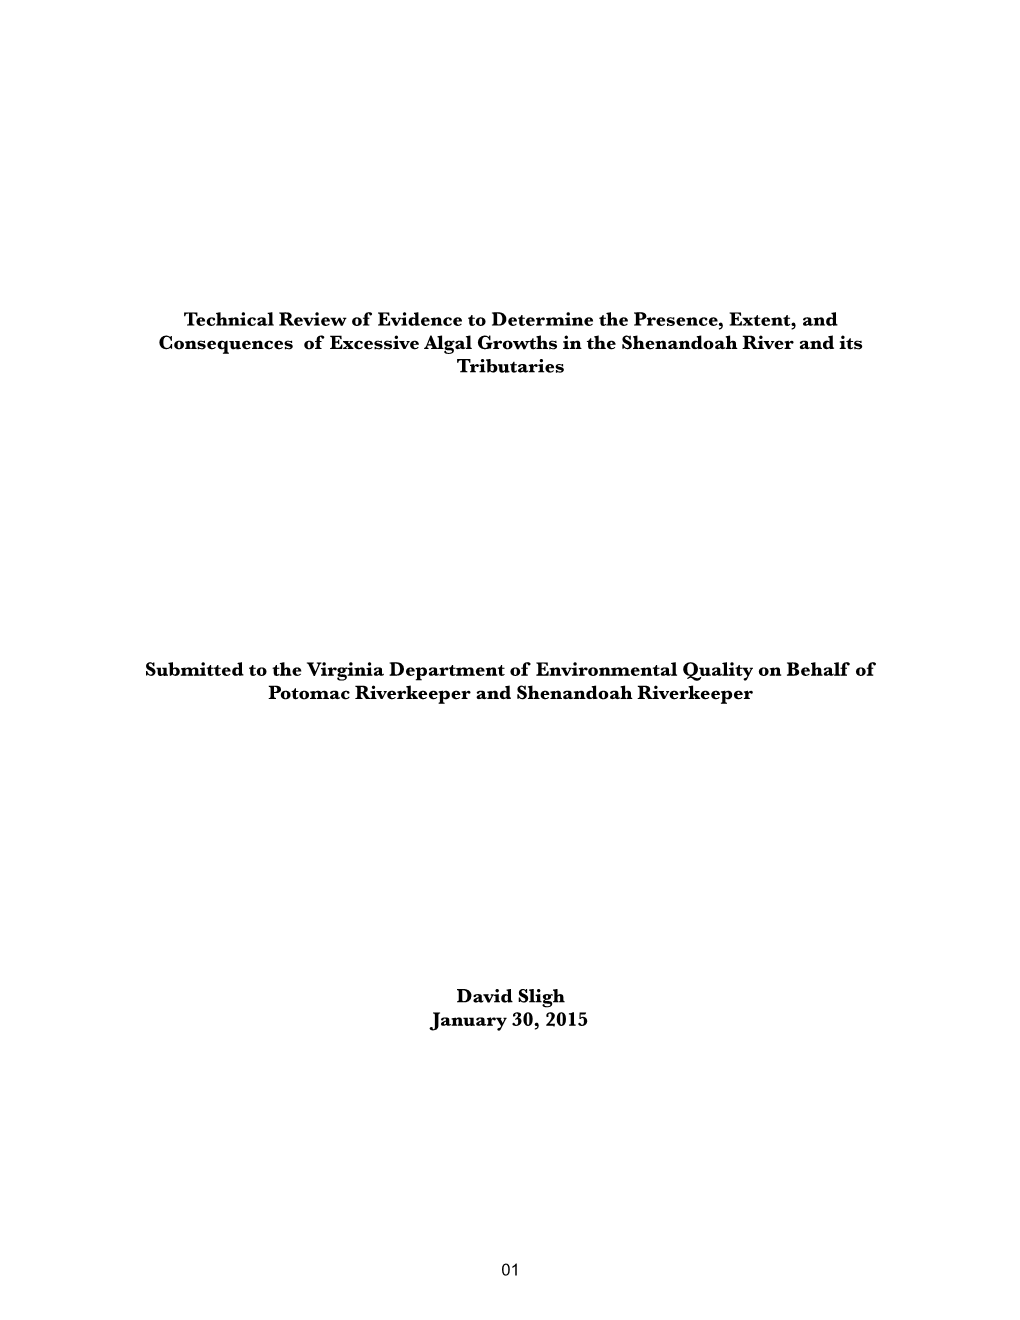 Att. B – Sligh Technical Review, 2014 VA IR